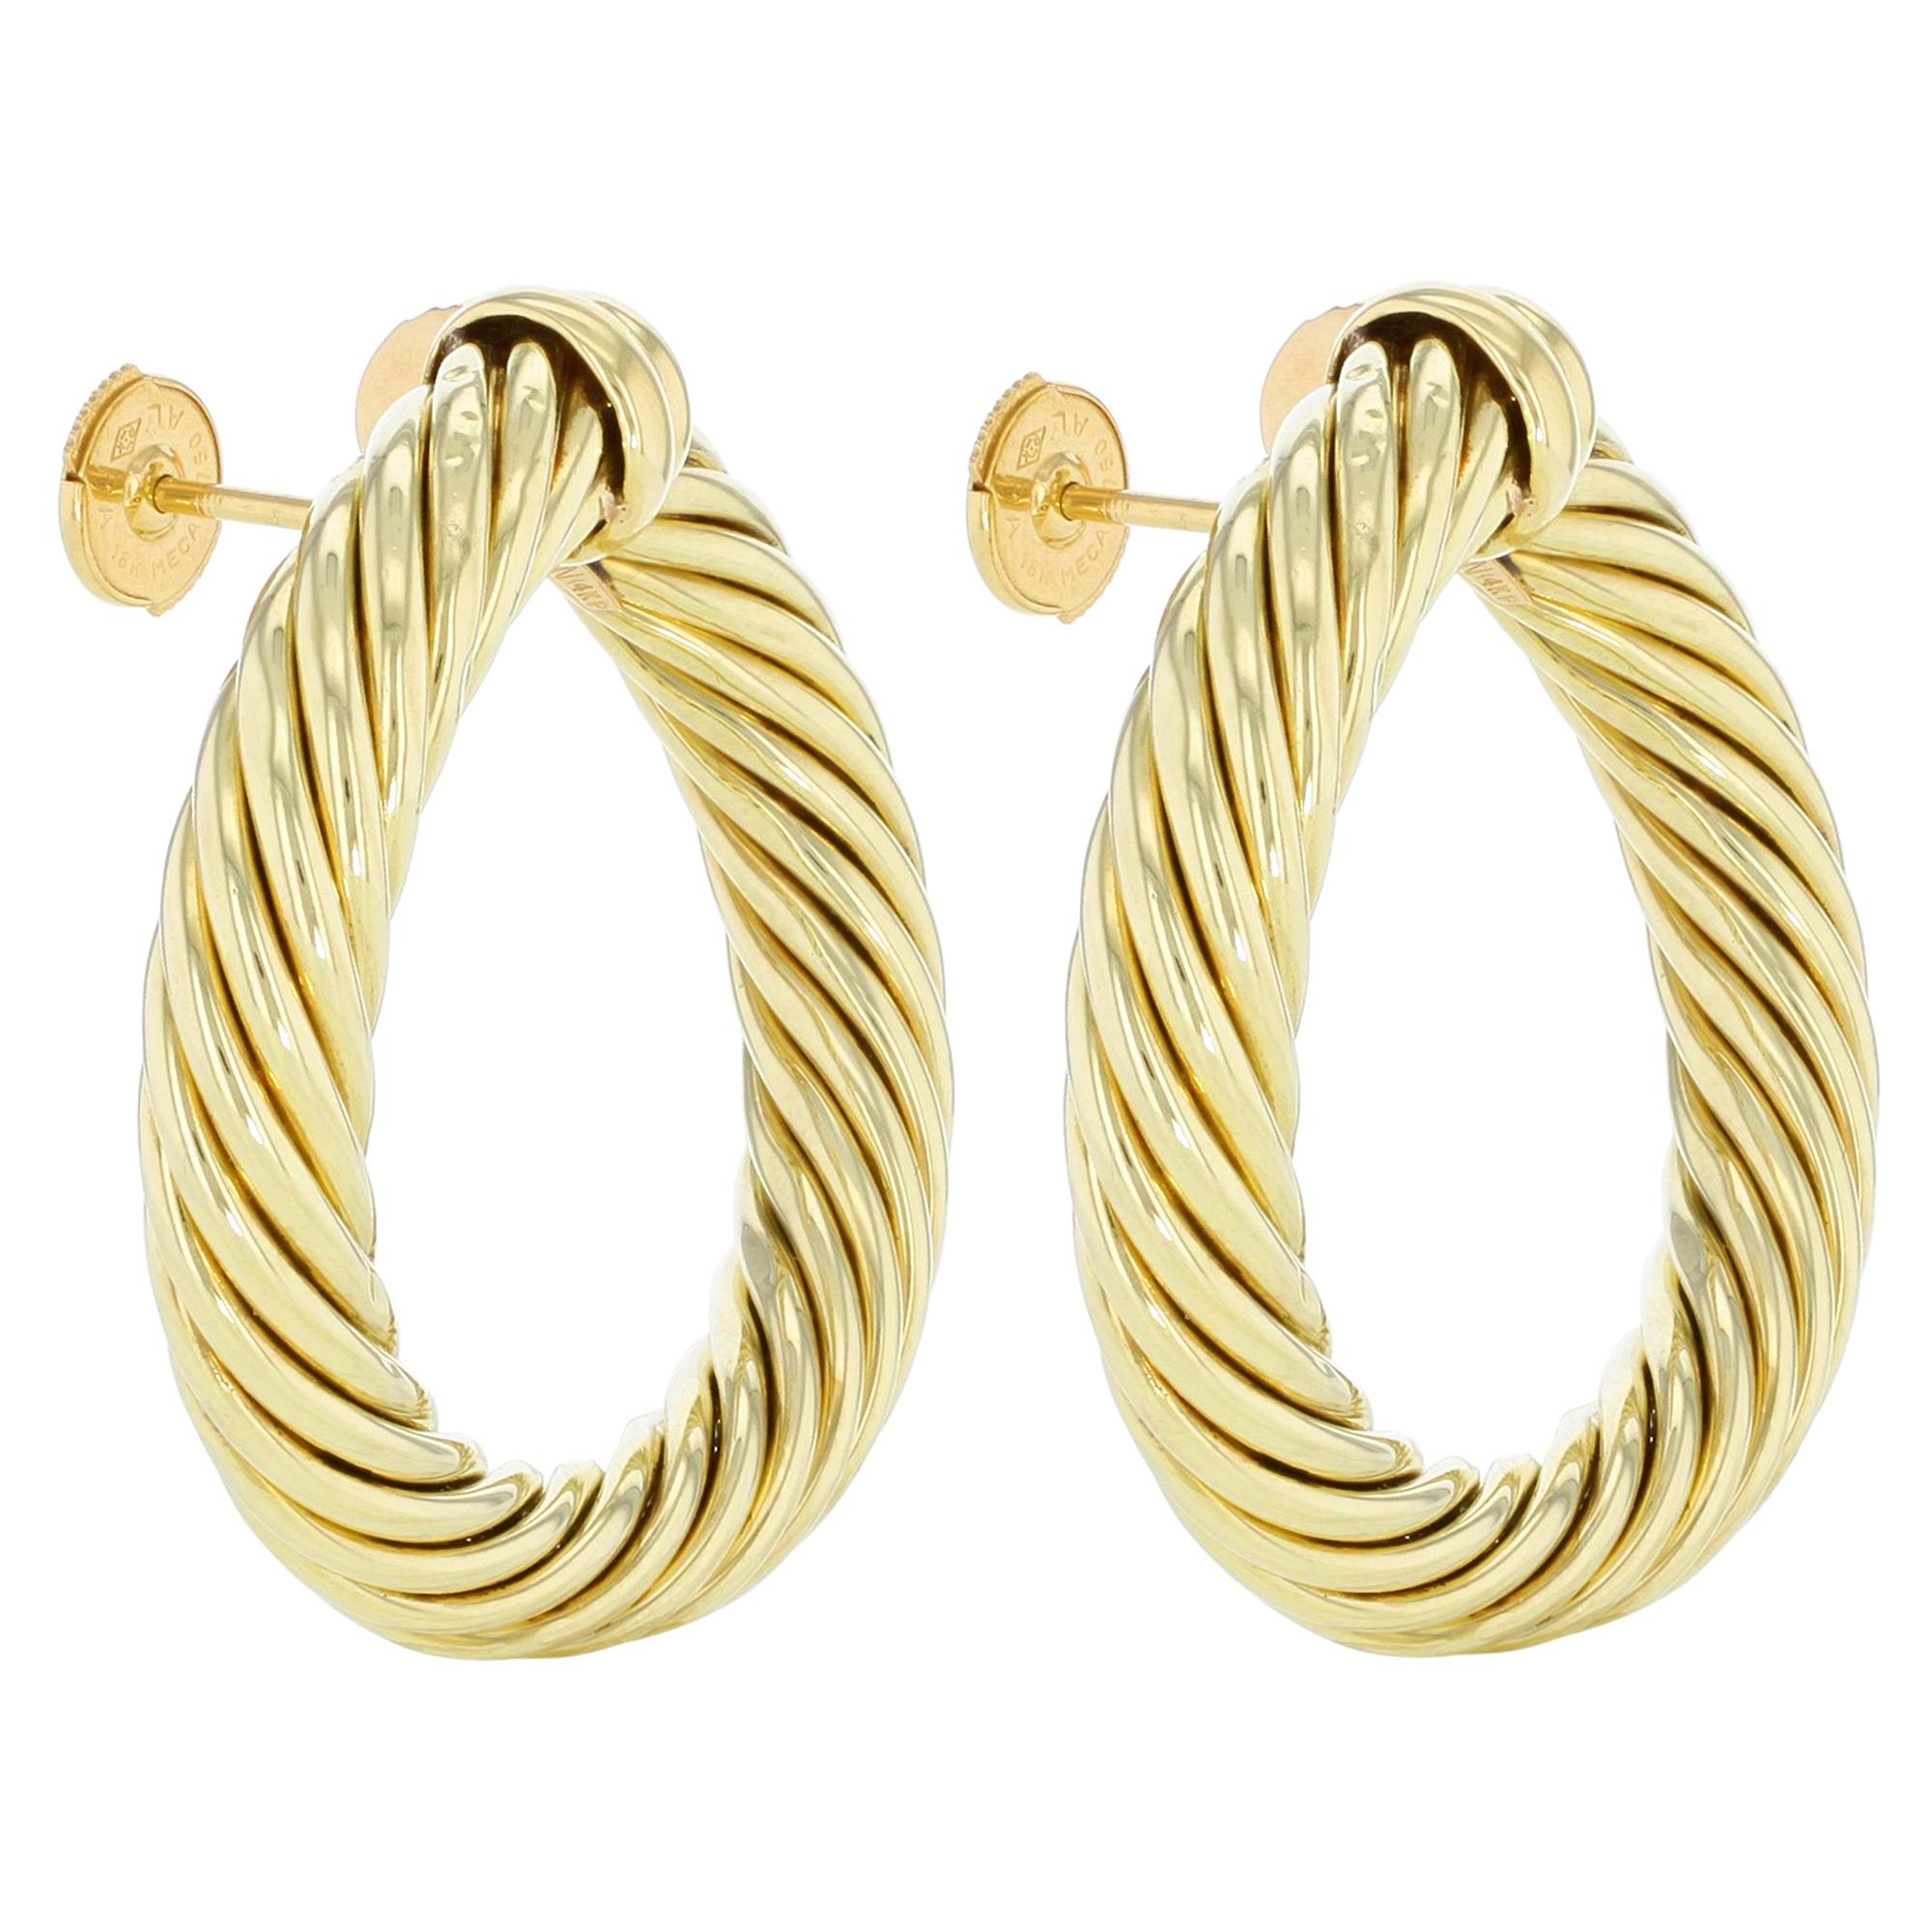 Modern David Yurman 18 Karat Yellow Gold Classic Cable Women's Hoop Earrings